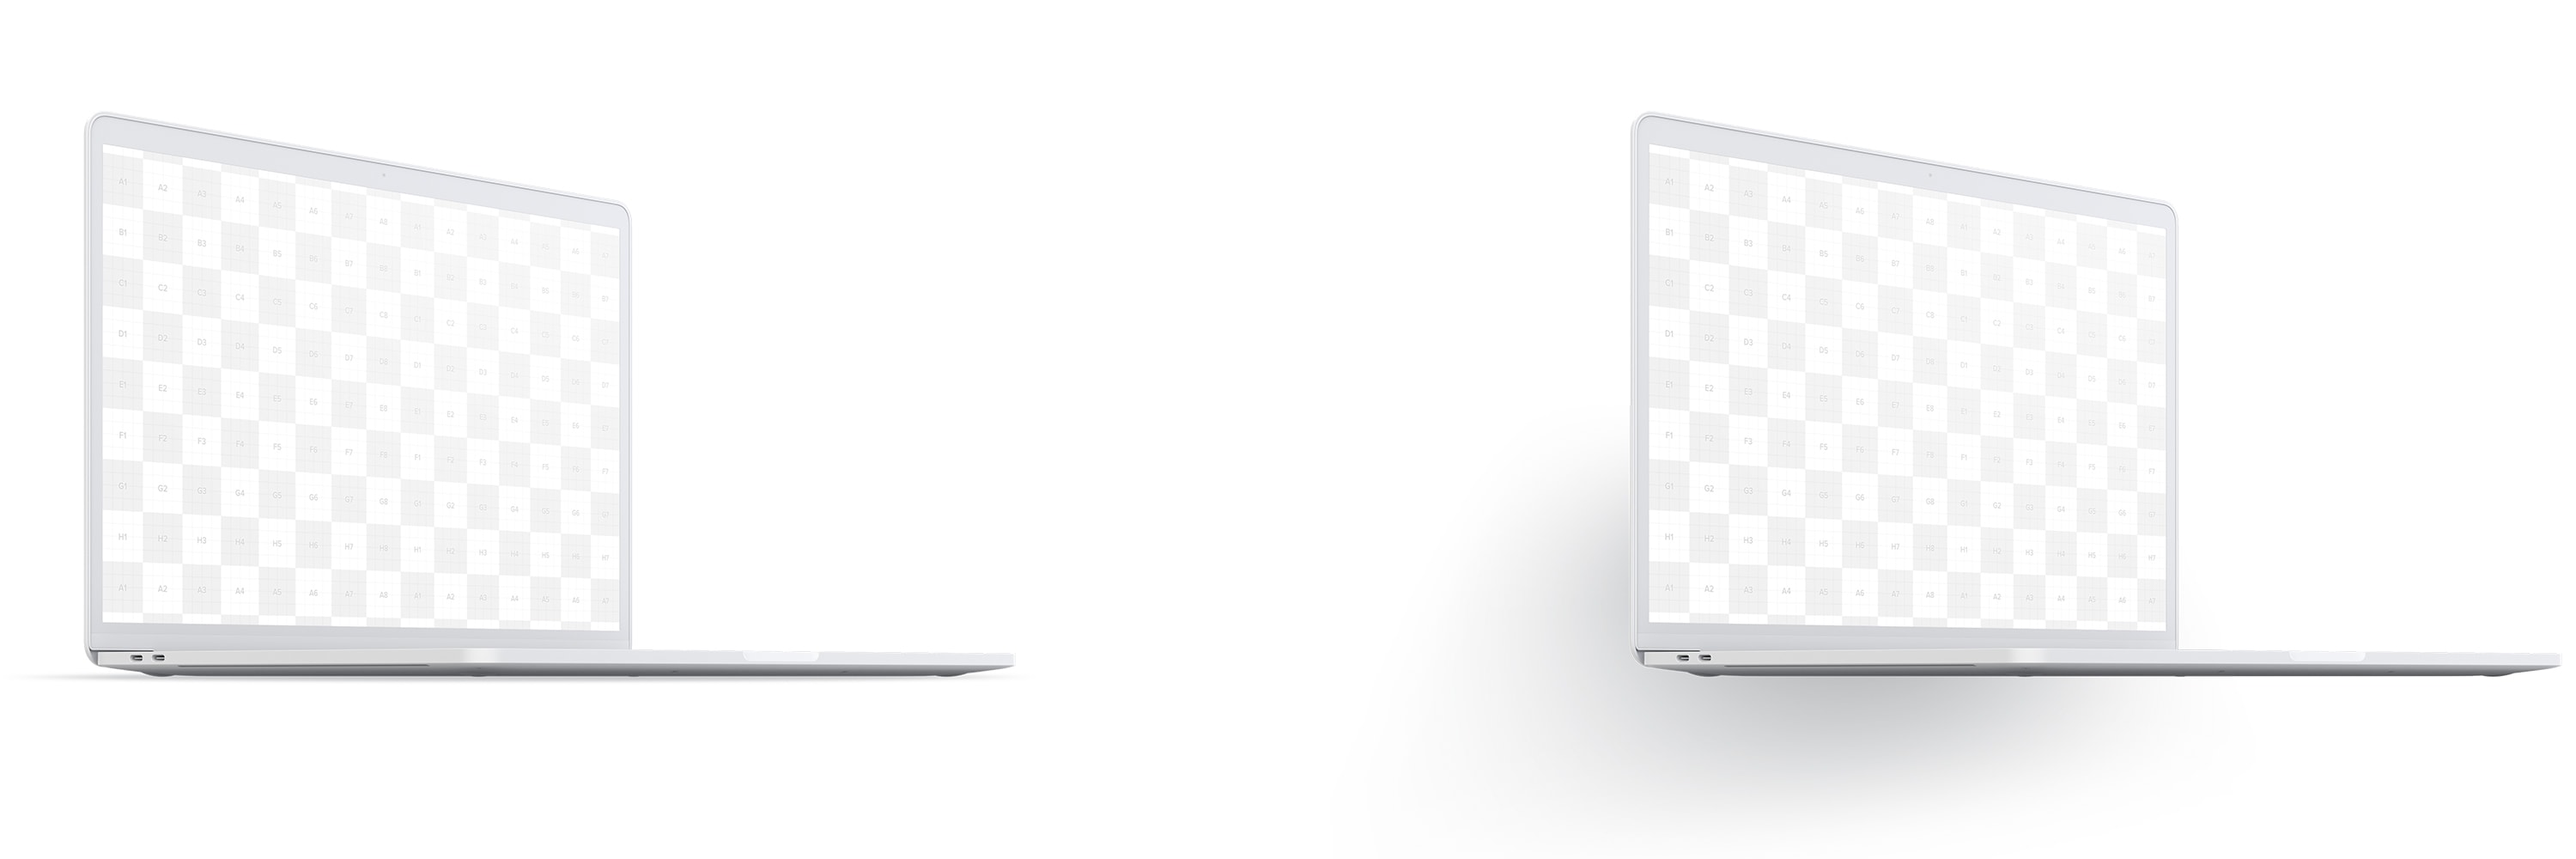 15寸MacBook Pro苹果笔记本电脑屏幕设计效果图预览前左视图样机02 Clay MacBook Pro 15" with Touch Bar, Front Left View Mockup 02插图(4)